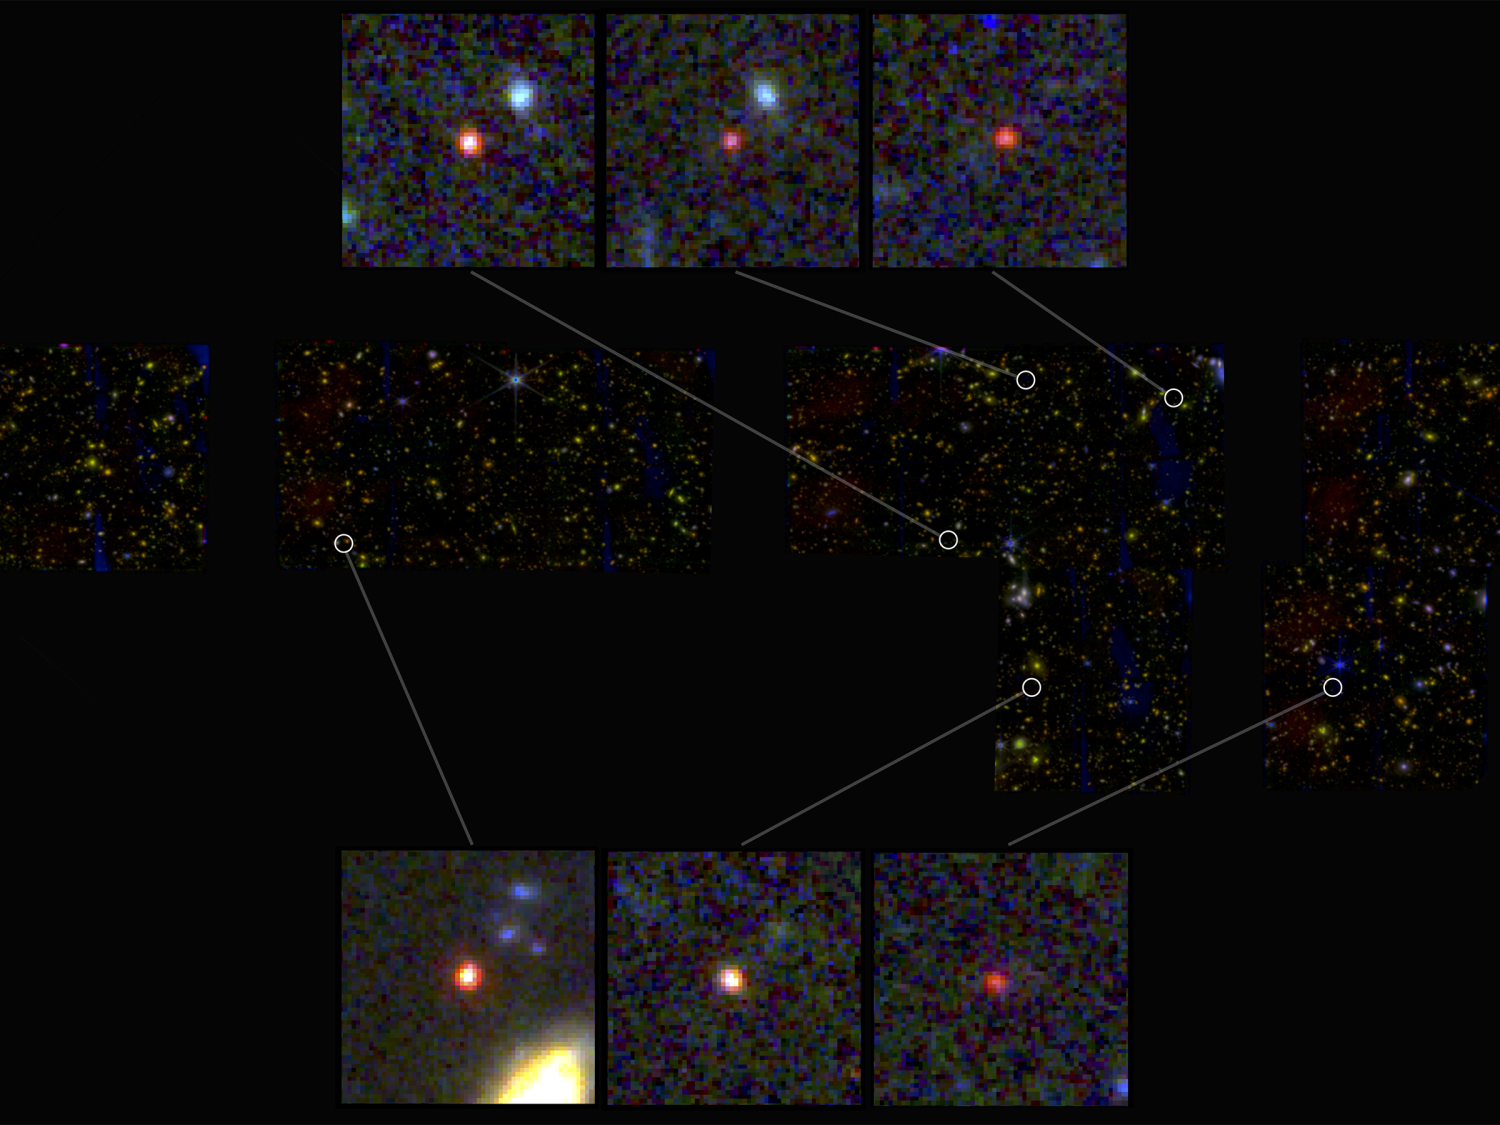 massive-galaxies-main.png?h=19ad3fdd&ito